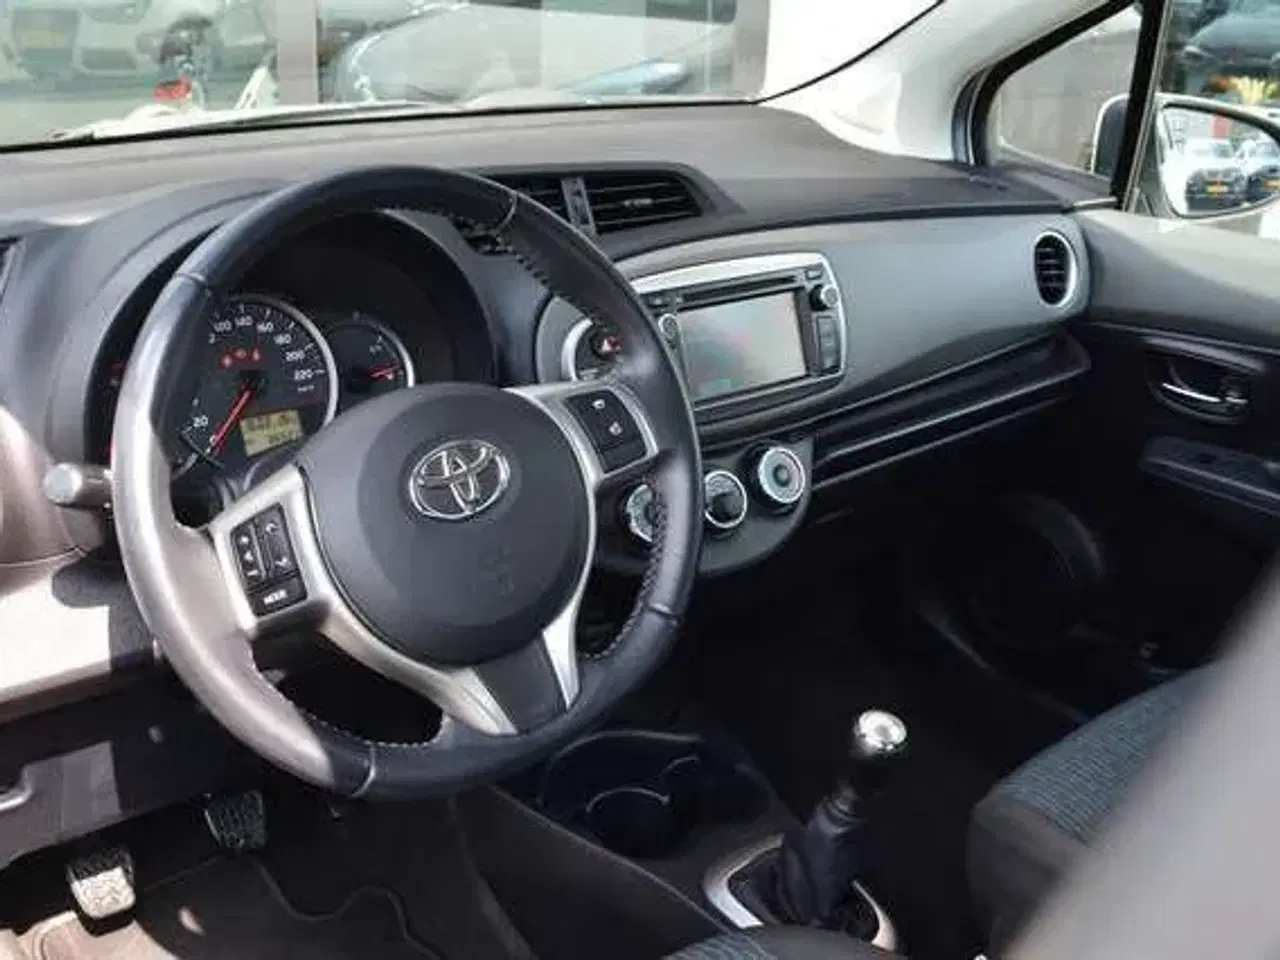 Billede 3 - Toyota Yaris fra 2013 sælges som reservedele.